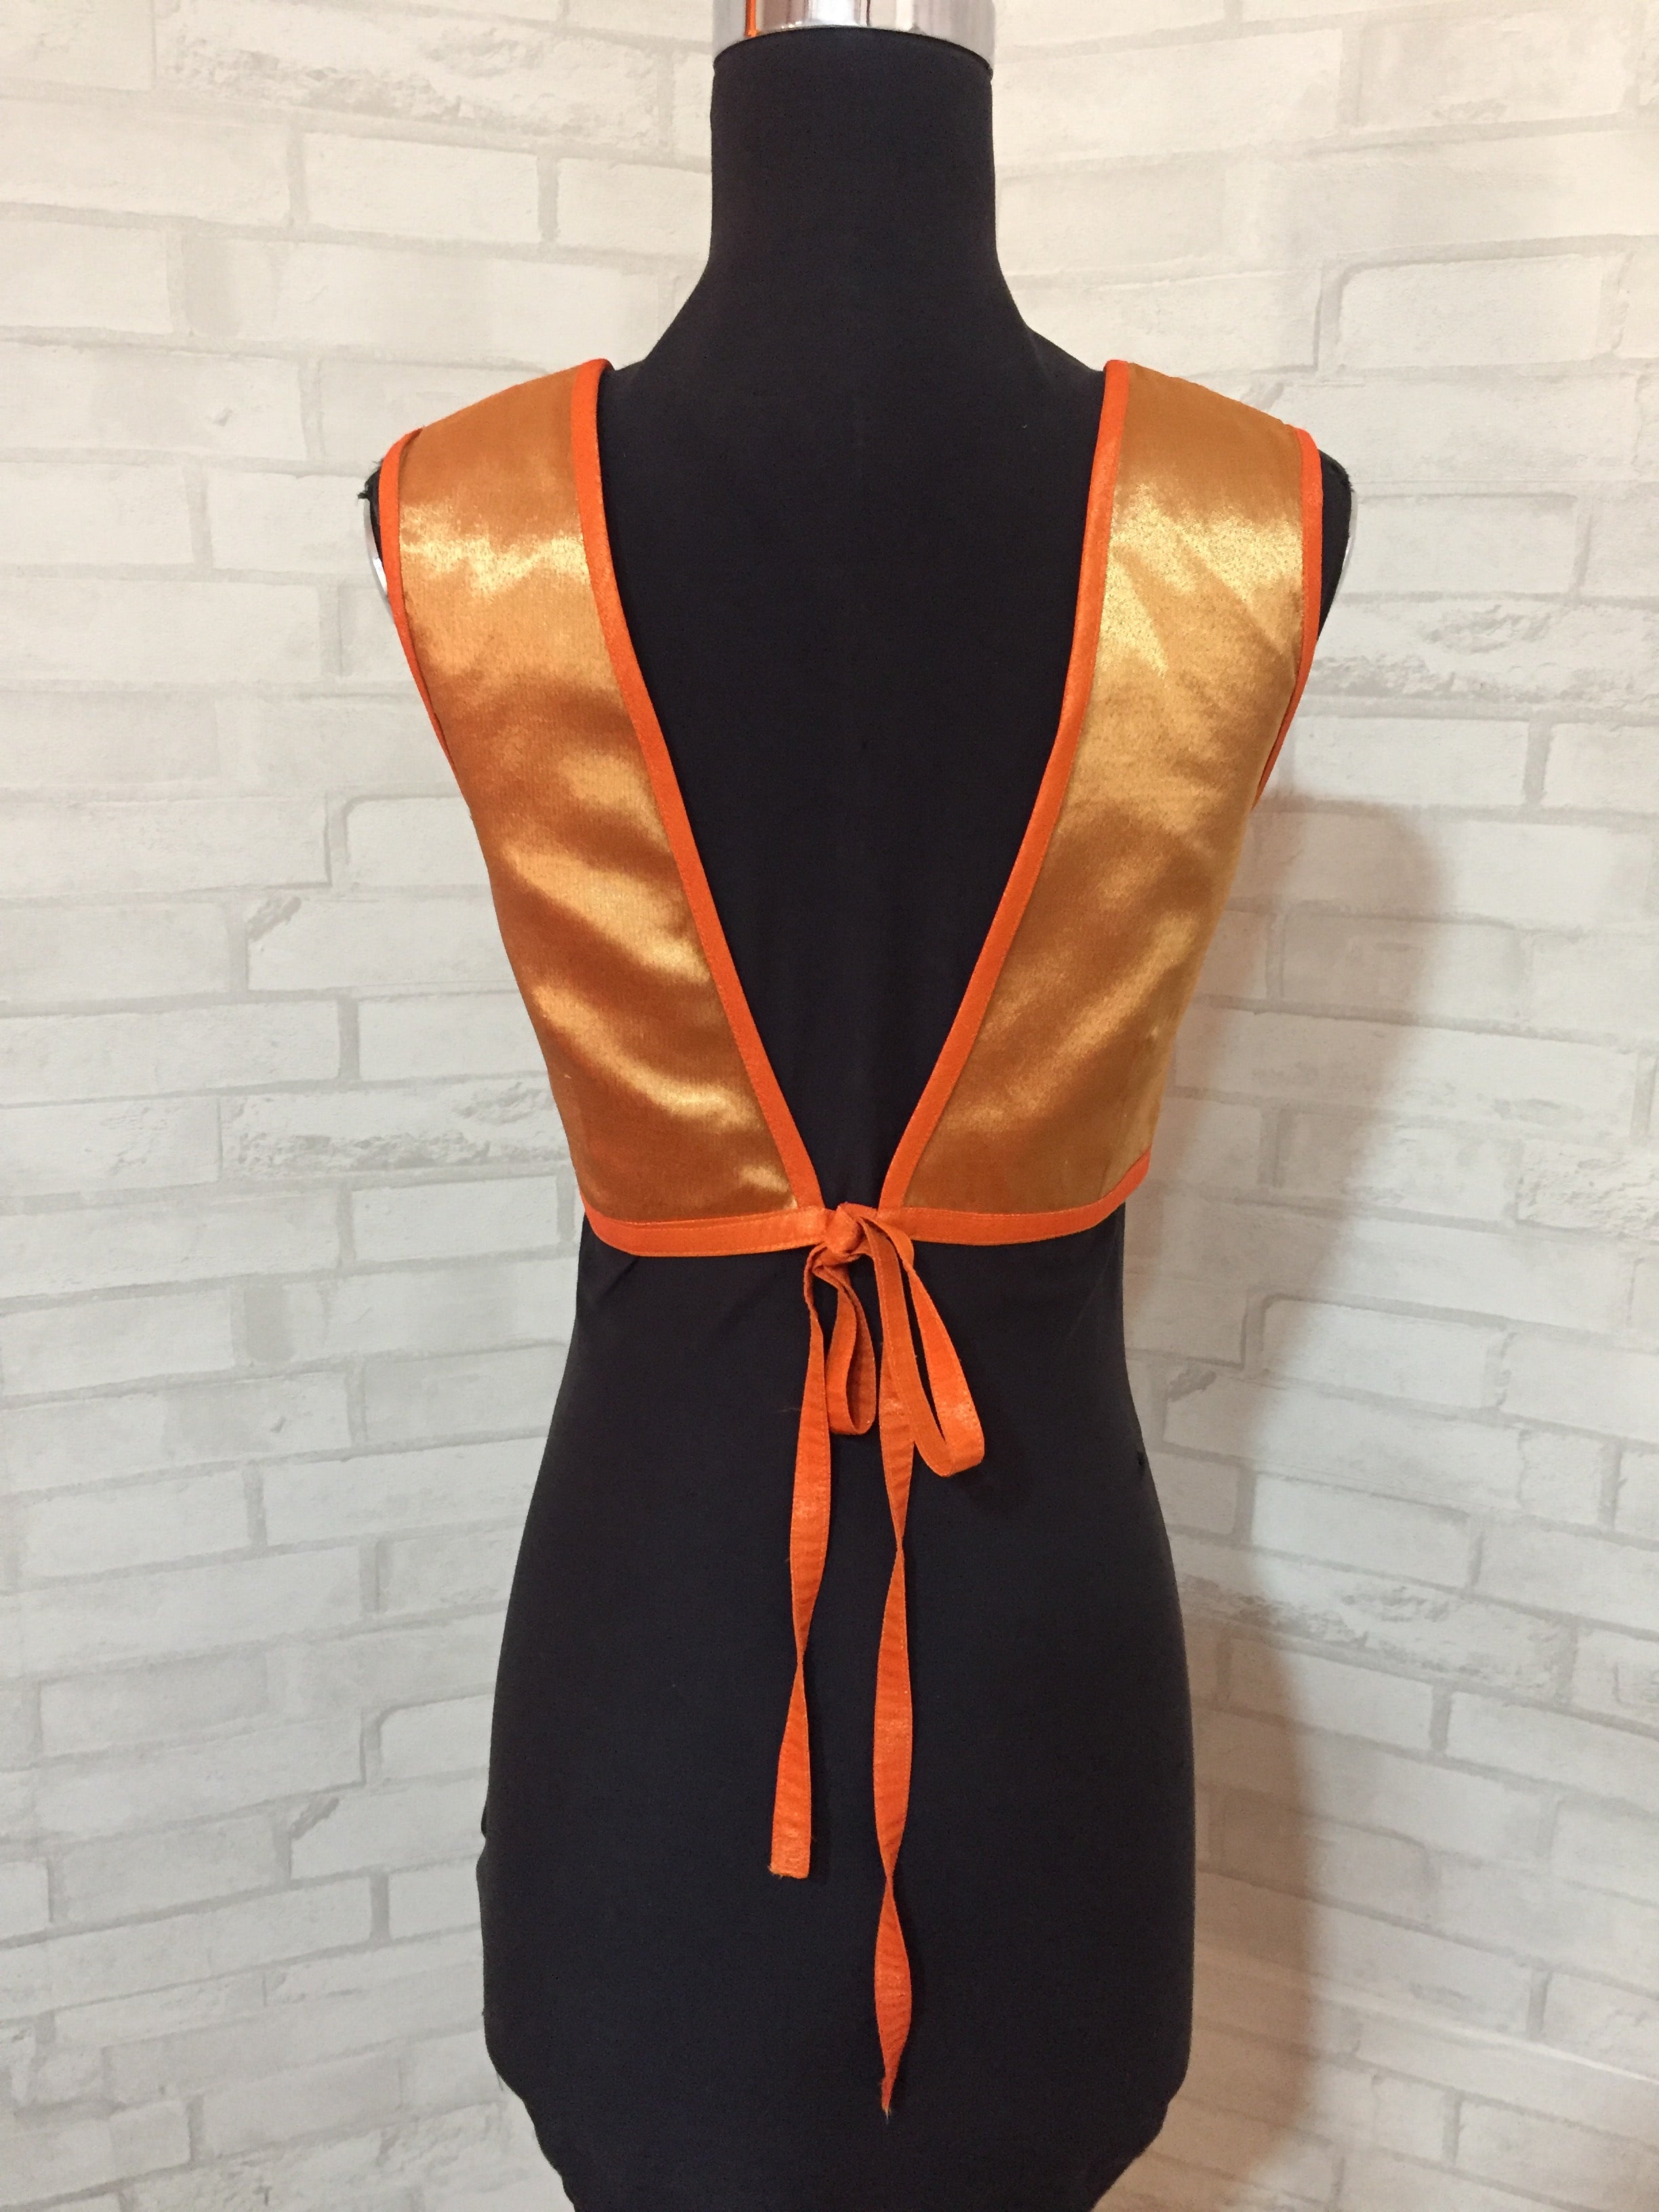 Orange tissue sleeveless blouse with embellished yoke and tie back - House of Blouse